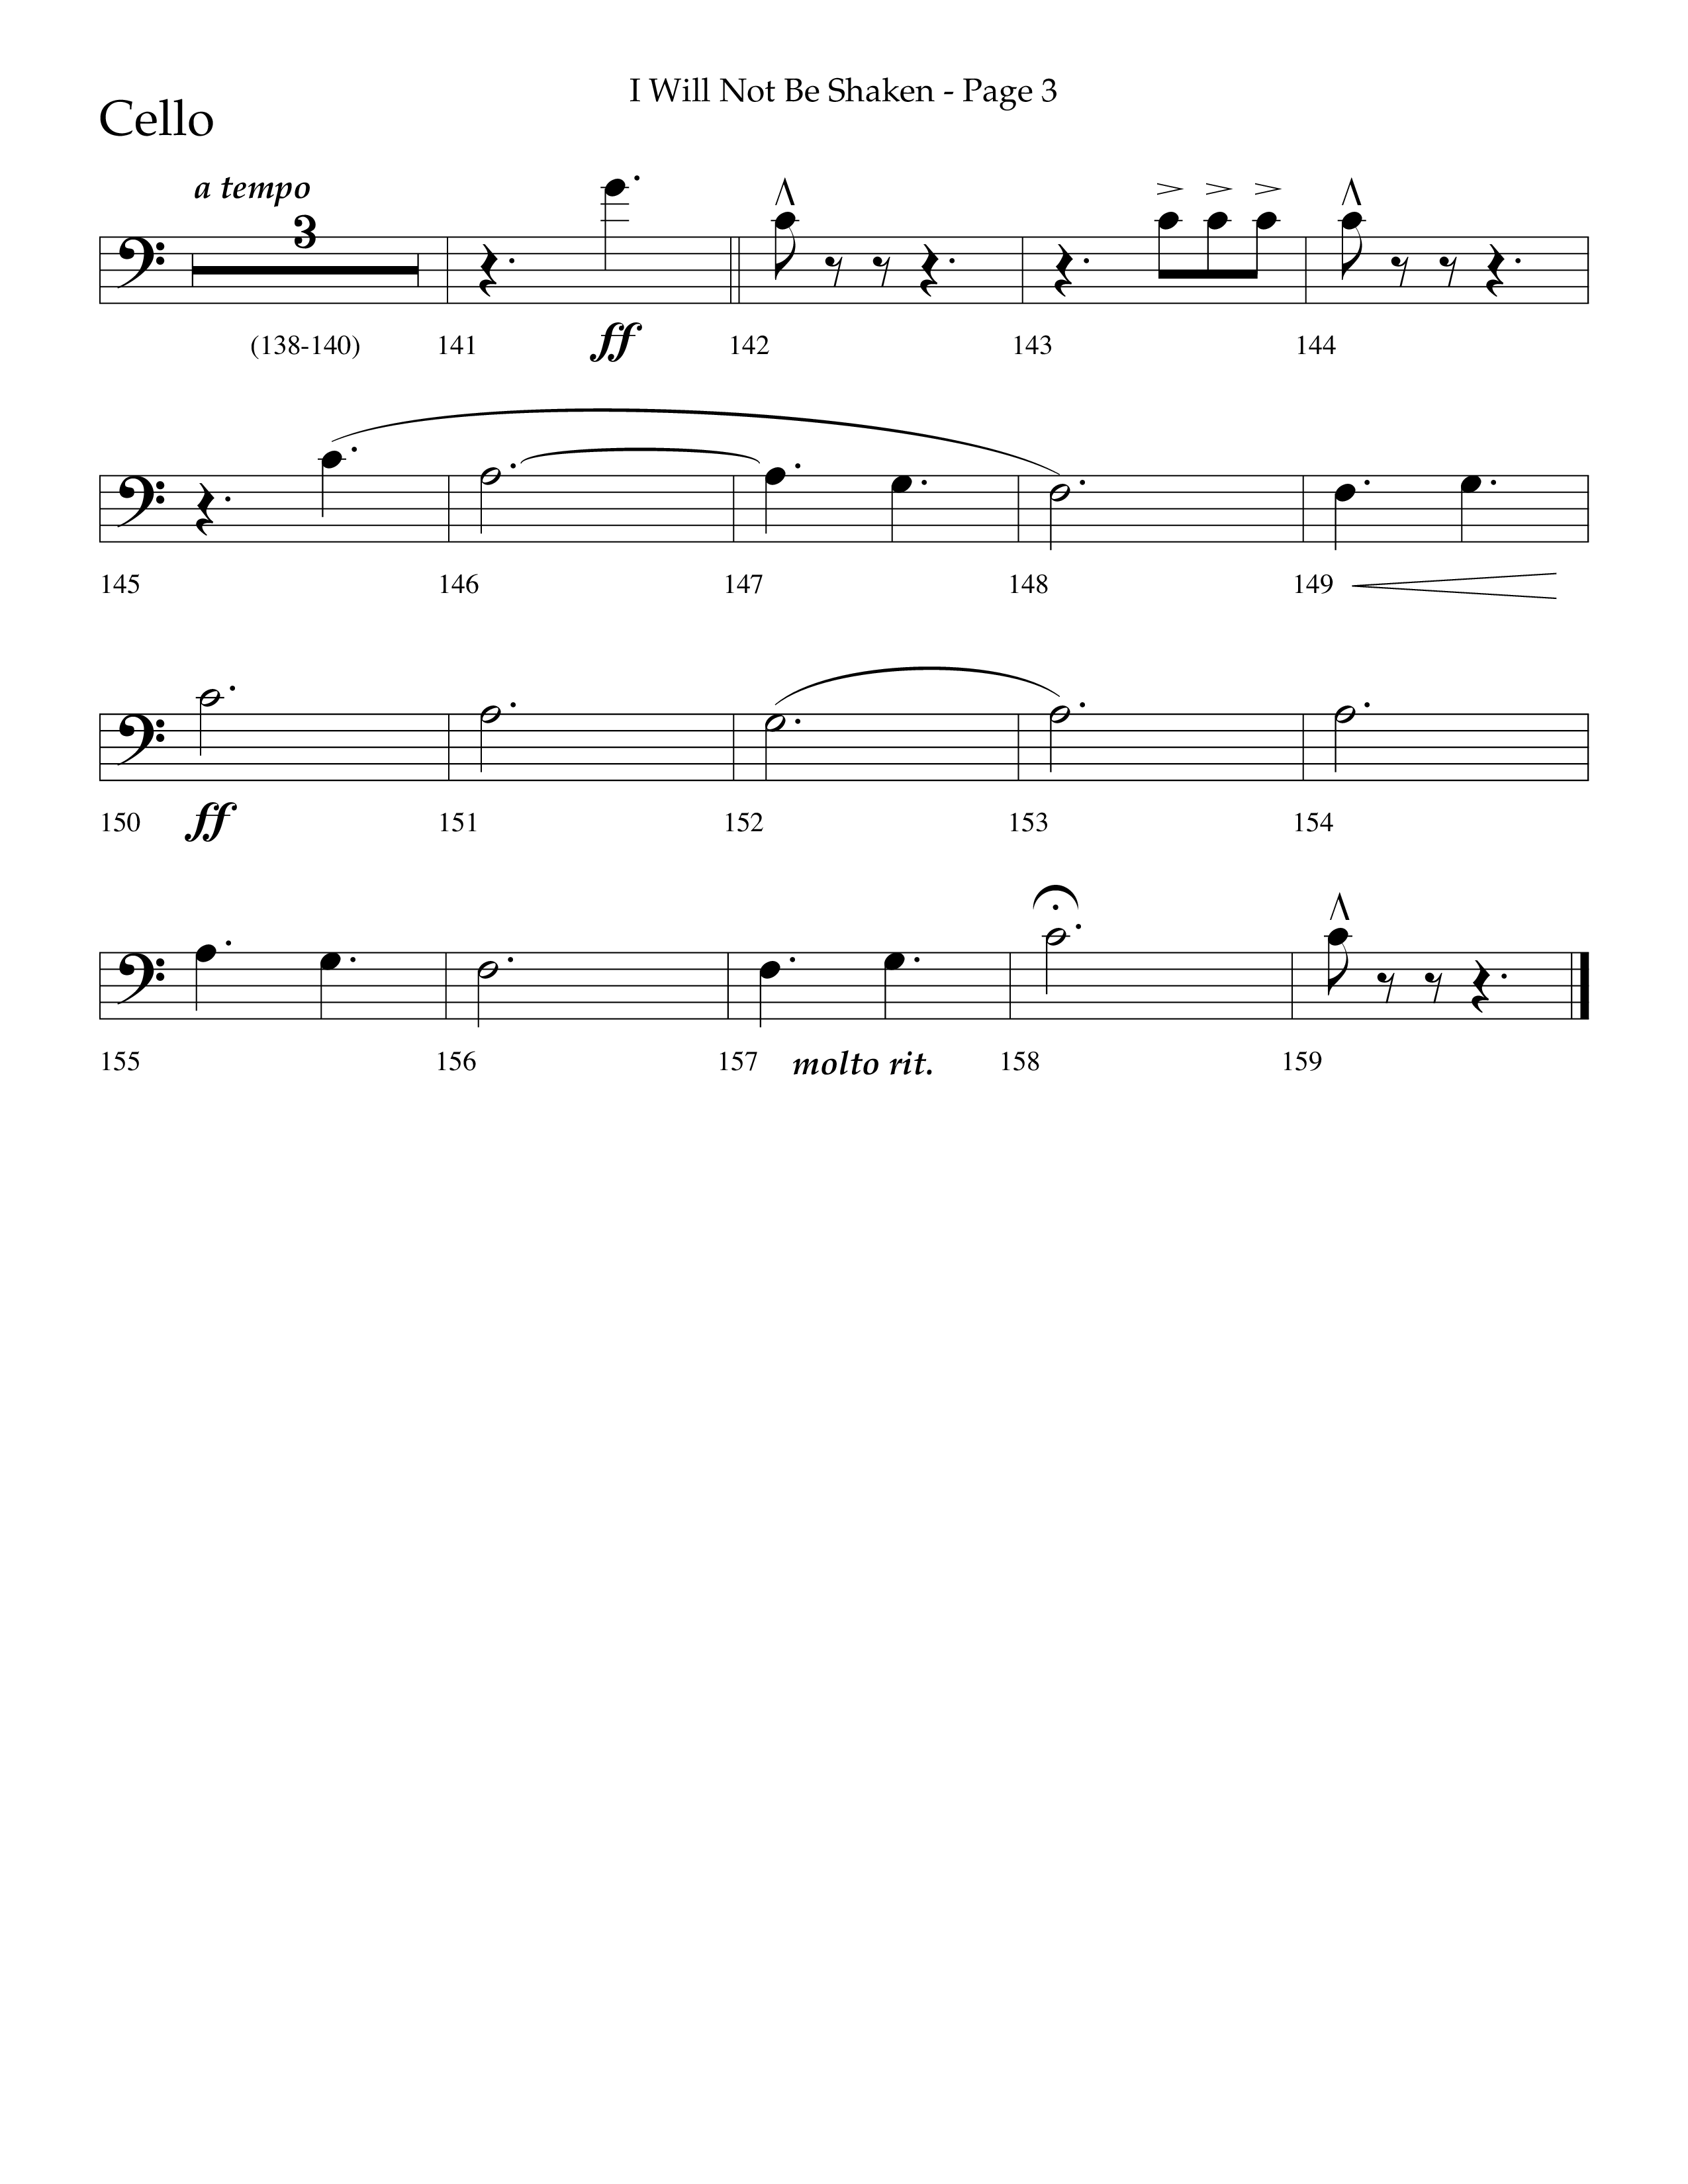 I Will Not Be Shaken (Choral Anthem SATB) Cello (Lifeway Choral / Arr. Cliff Duren)